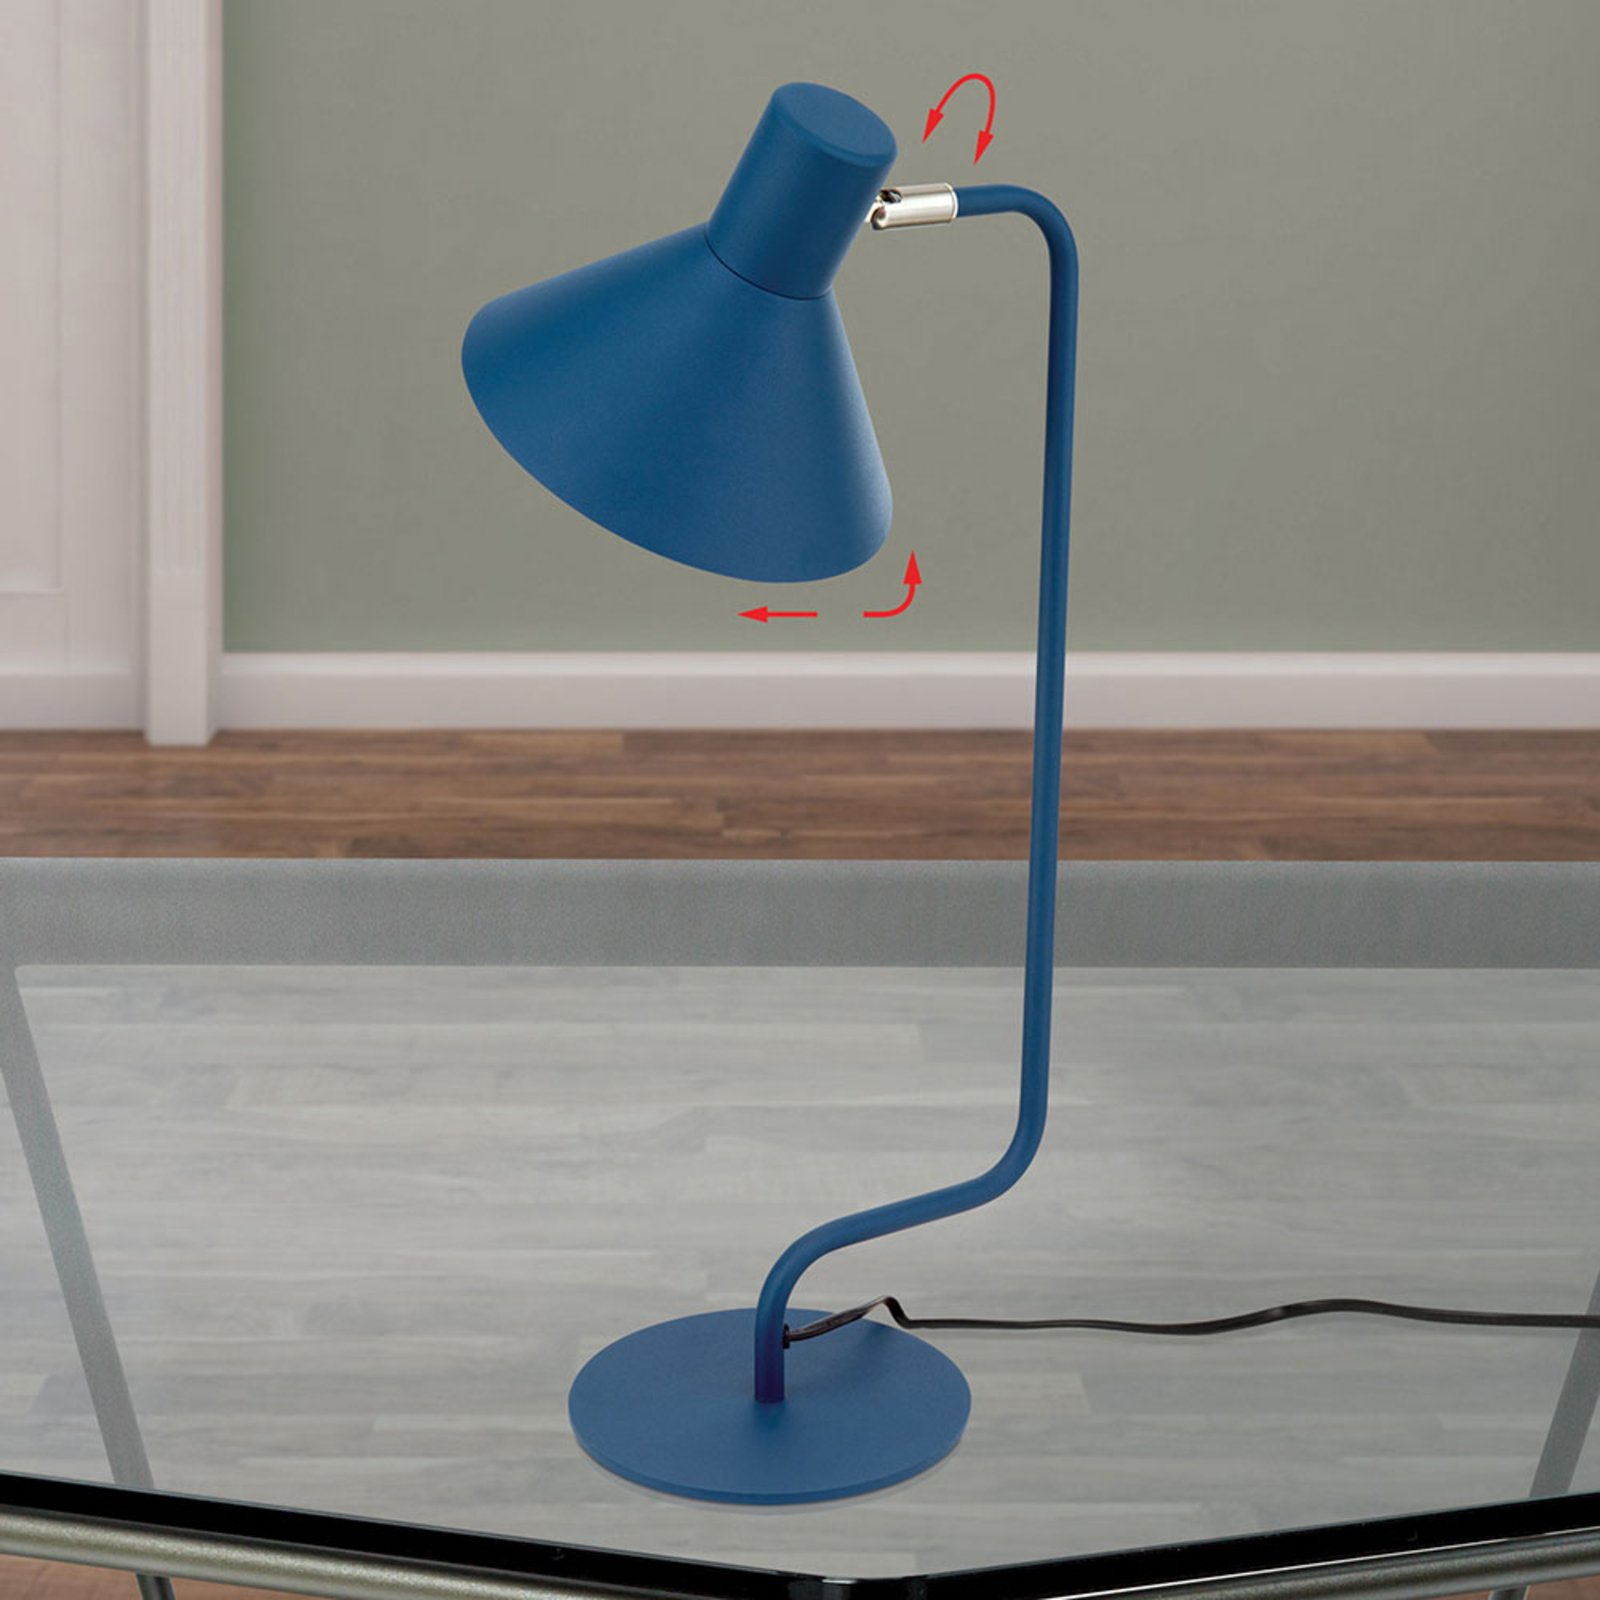 Viktoria desk lamp, adjustable head, blue